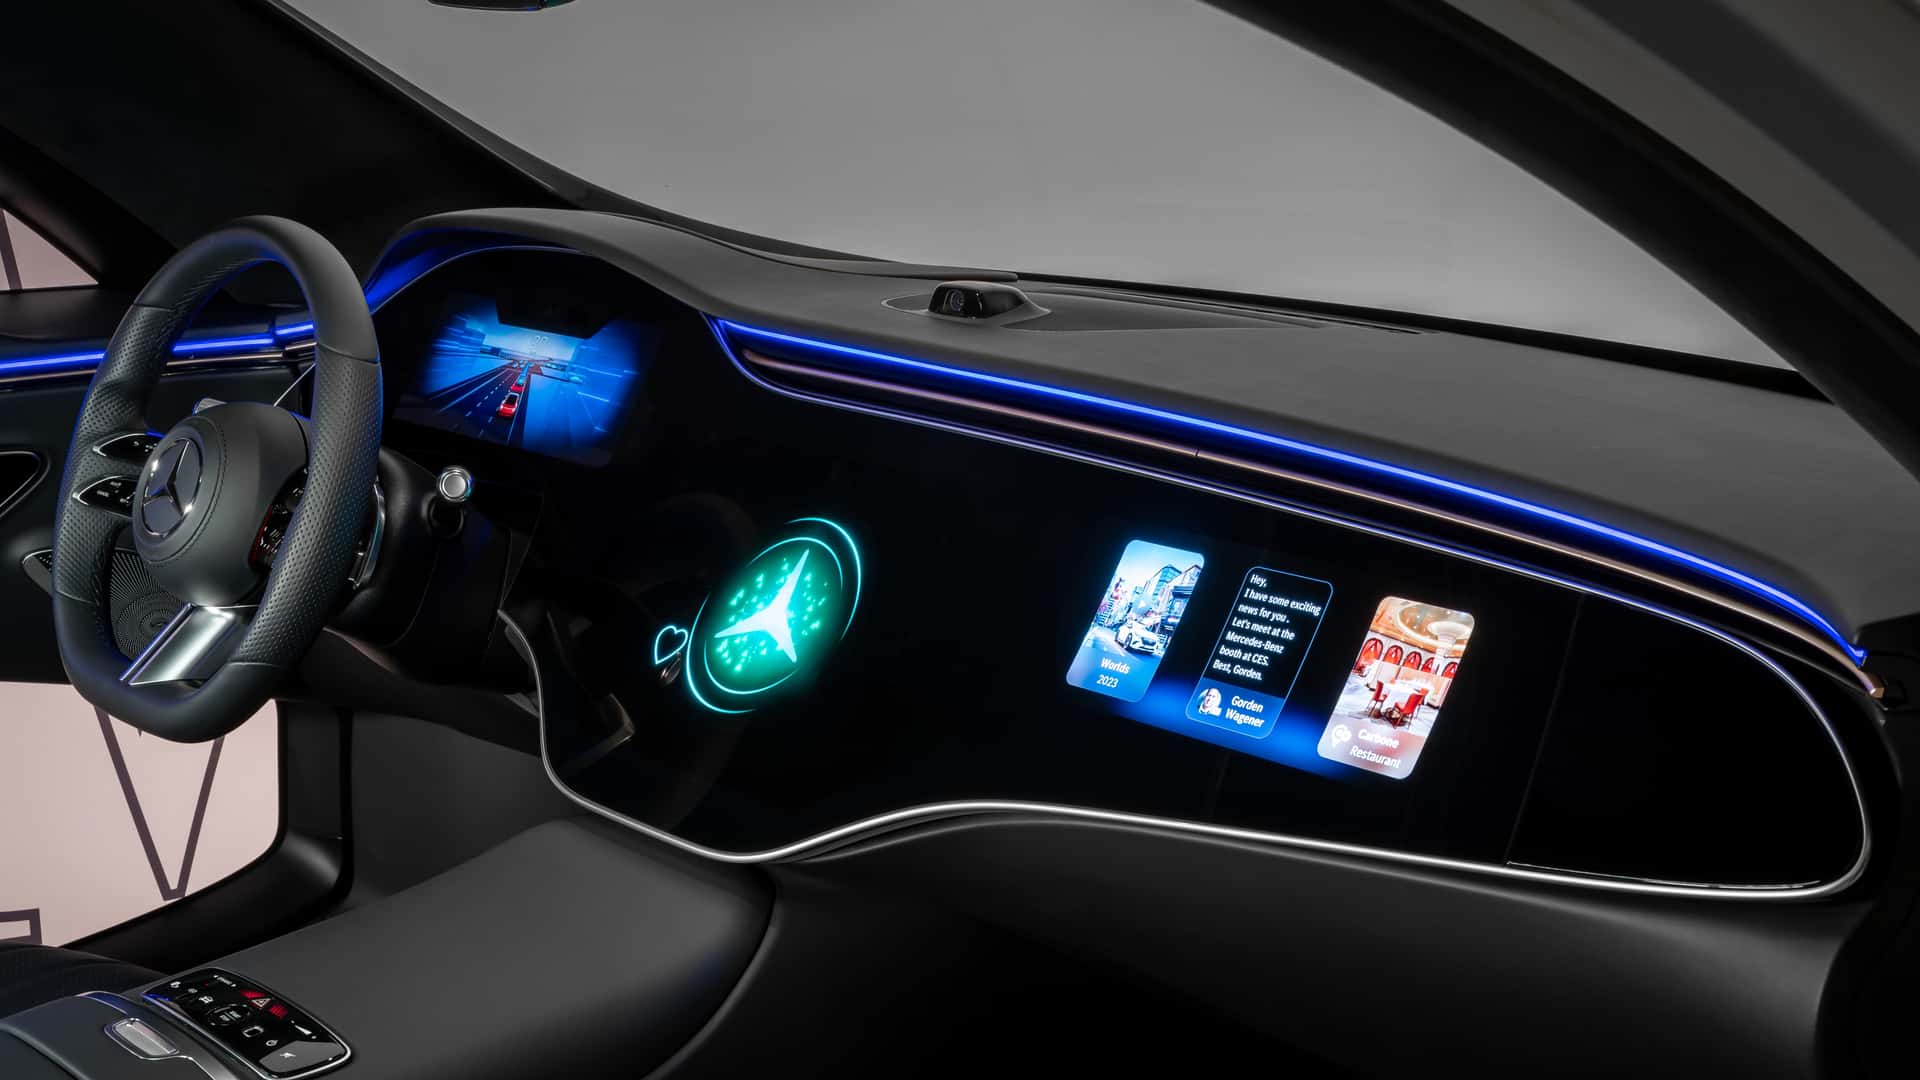 مرسيدس تكشف عن الجيل الجديد من نظام التشغيل لسياراتها بتقنيات مبتكرة جديدة 14